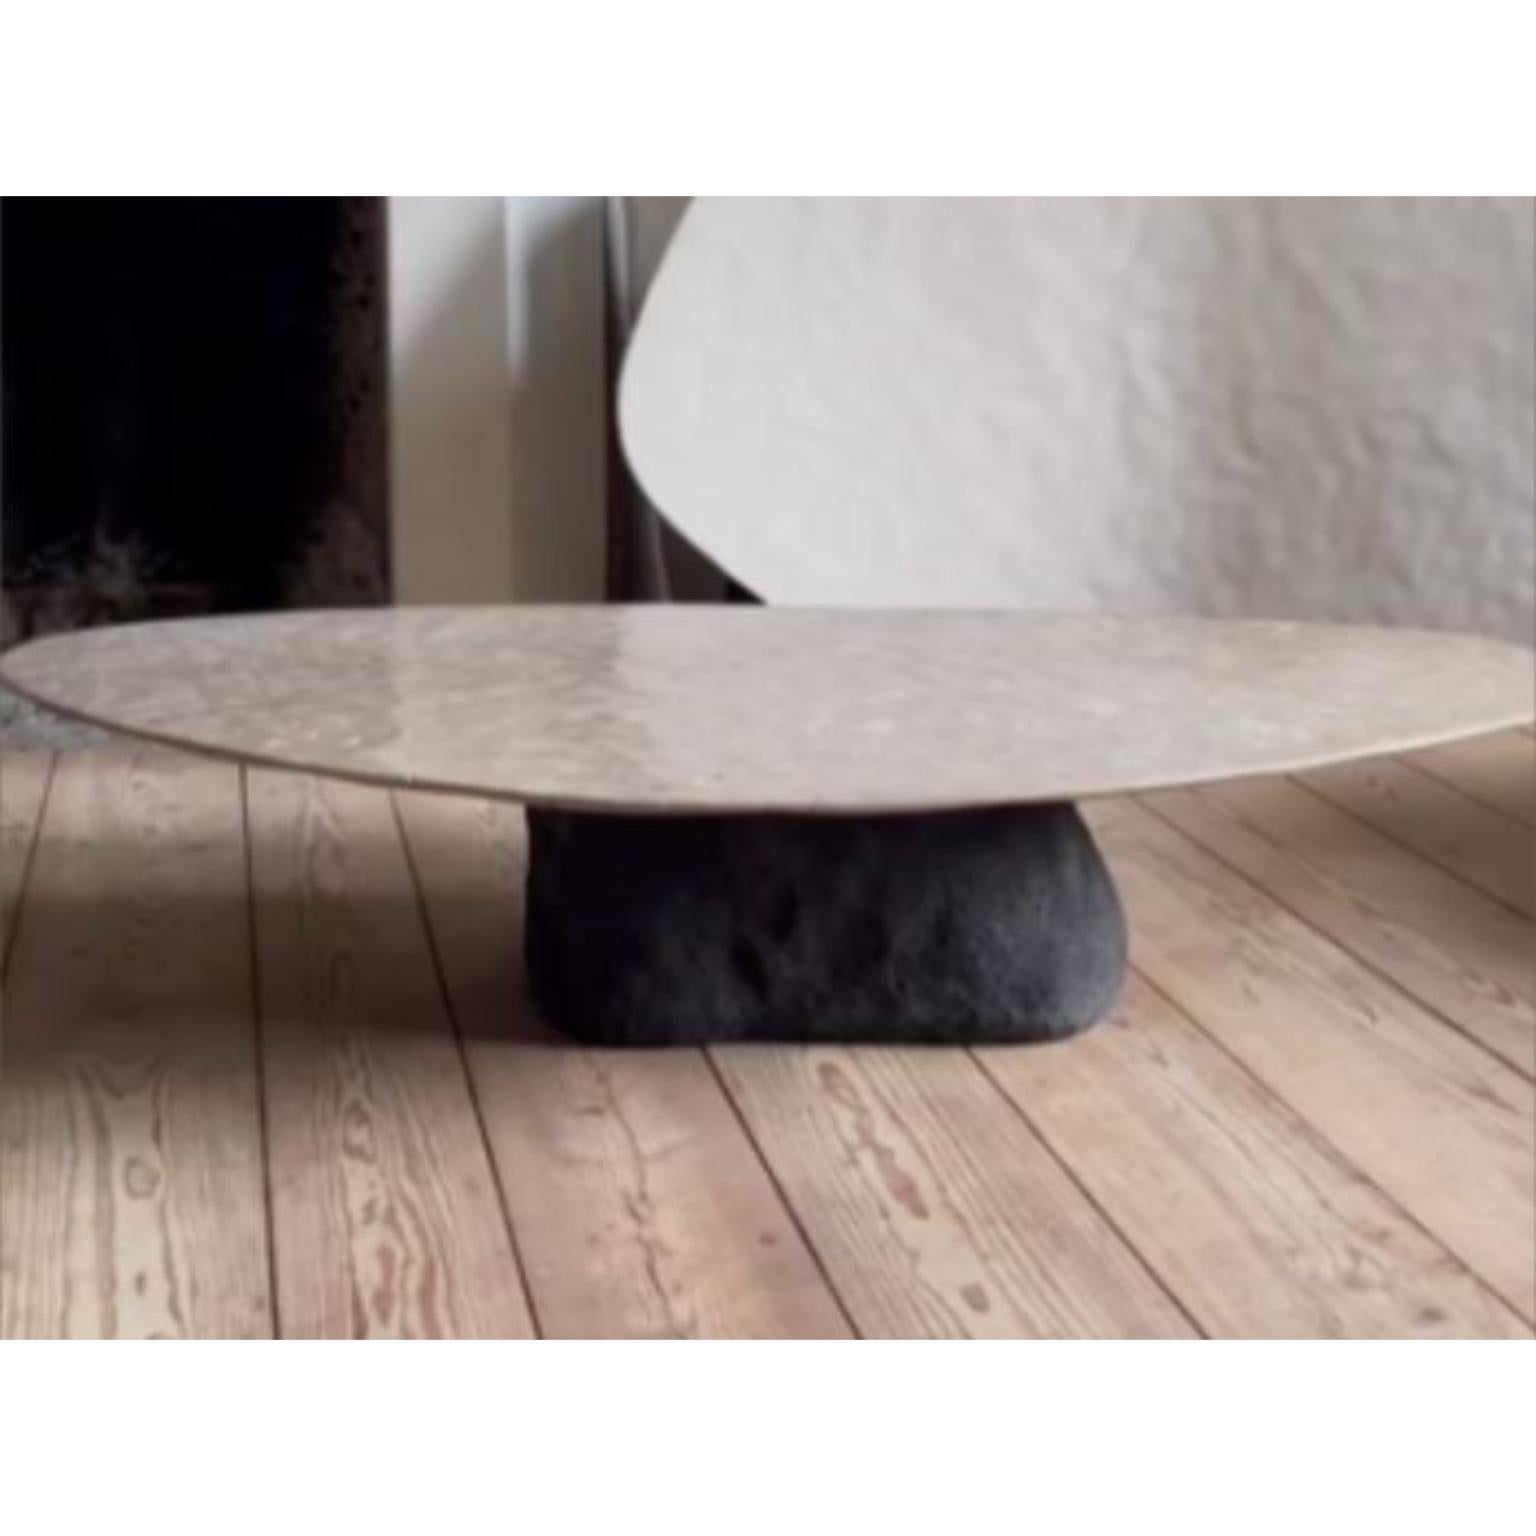 Bronzatto Niedriger Tisch von Atelier Benoit Viaene
Abmessungen: T 96 x B 190 x H 36 cm.
MATERIALIEN: Holz.

Benoit Viaene stammt ursprünglich aus Kortrijk und lebt und arbeitet heute in Gent.
Er ist diplomierter Architekt des Henry Van de Velde